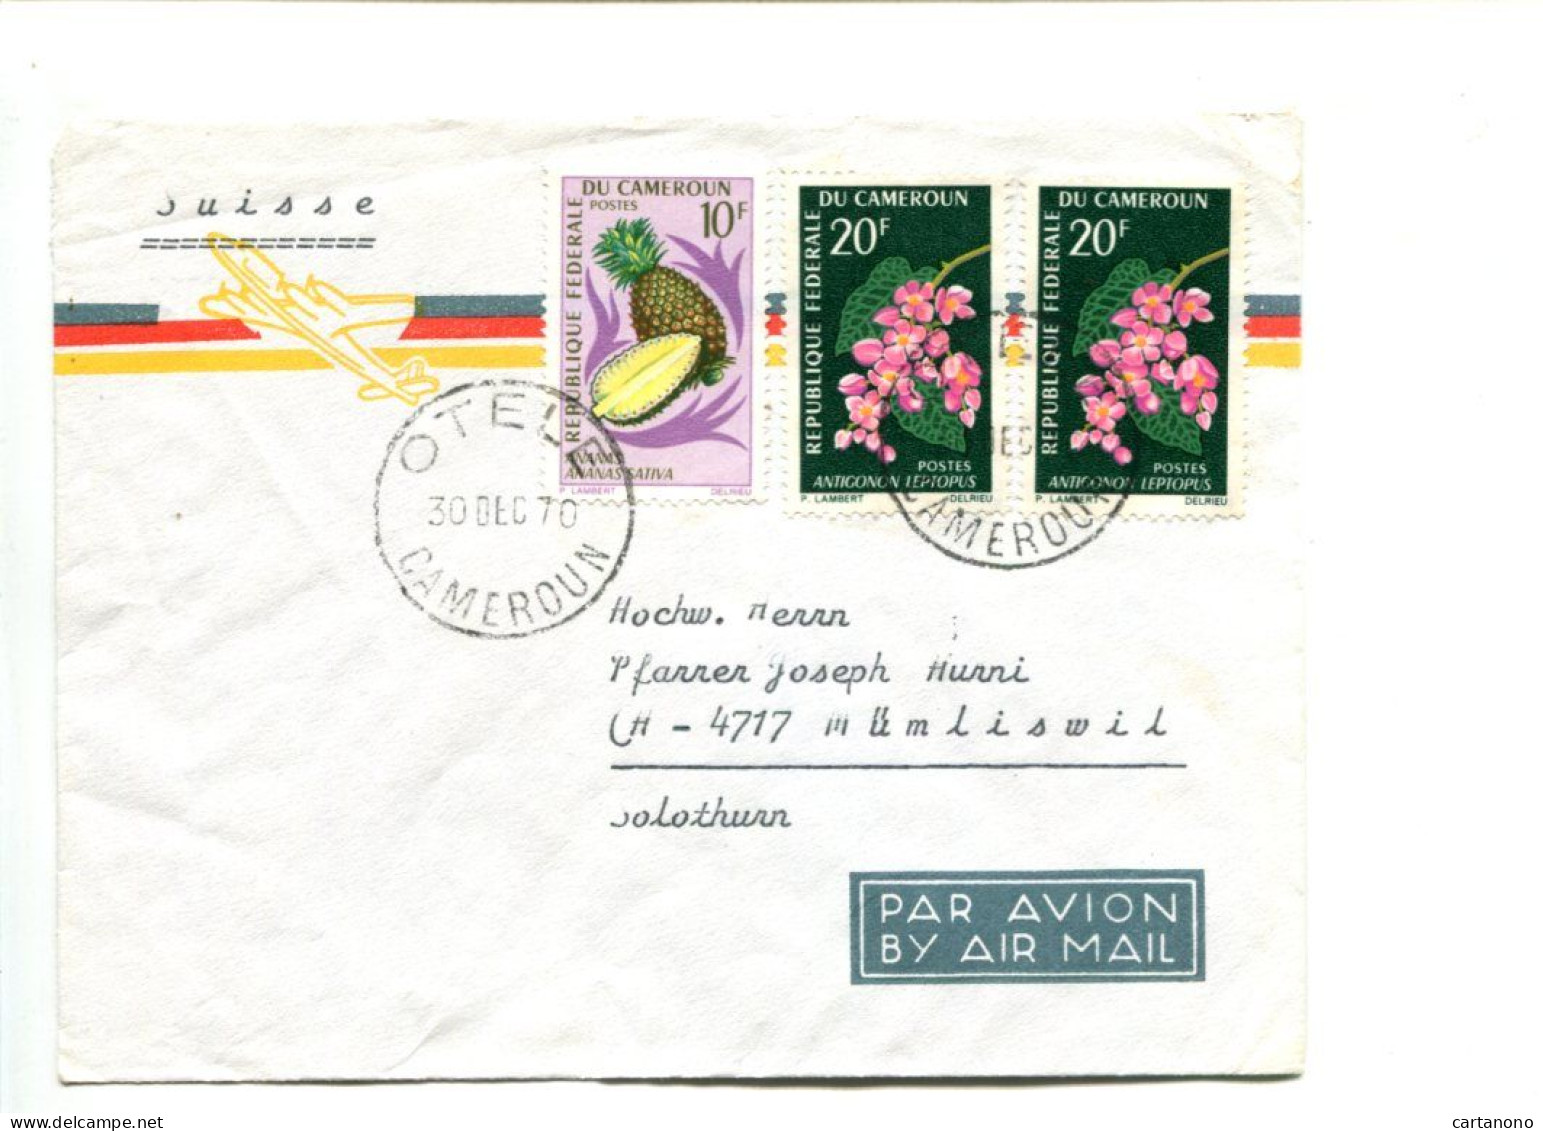 CAMEROUN - Affranchissement Sur Lettre Par Avion Pour La Suisse - Fleurs / Fruits Ananas - Cameroun (1960-...)